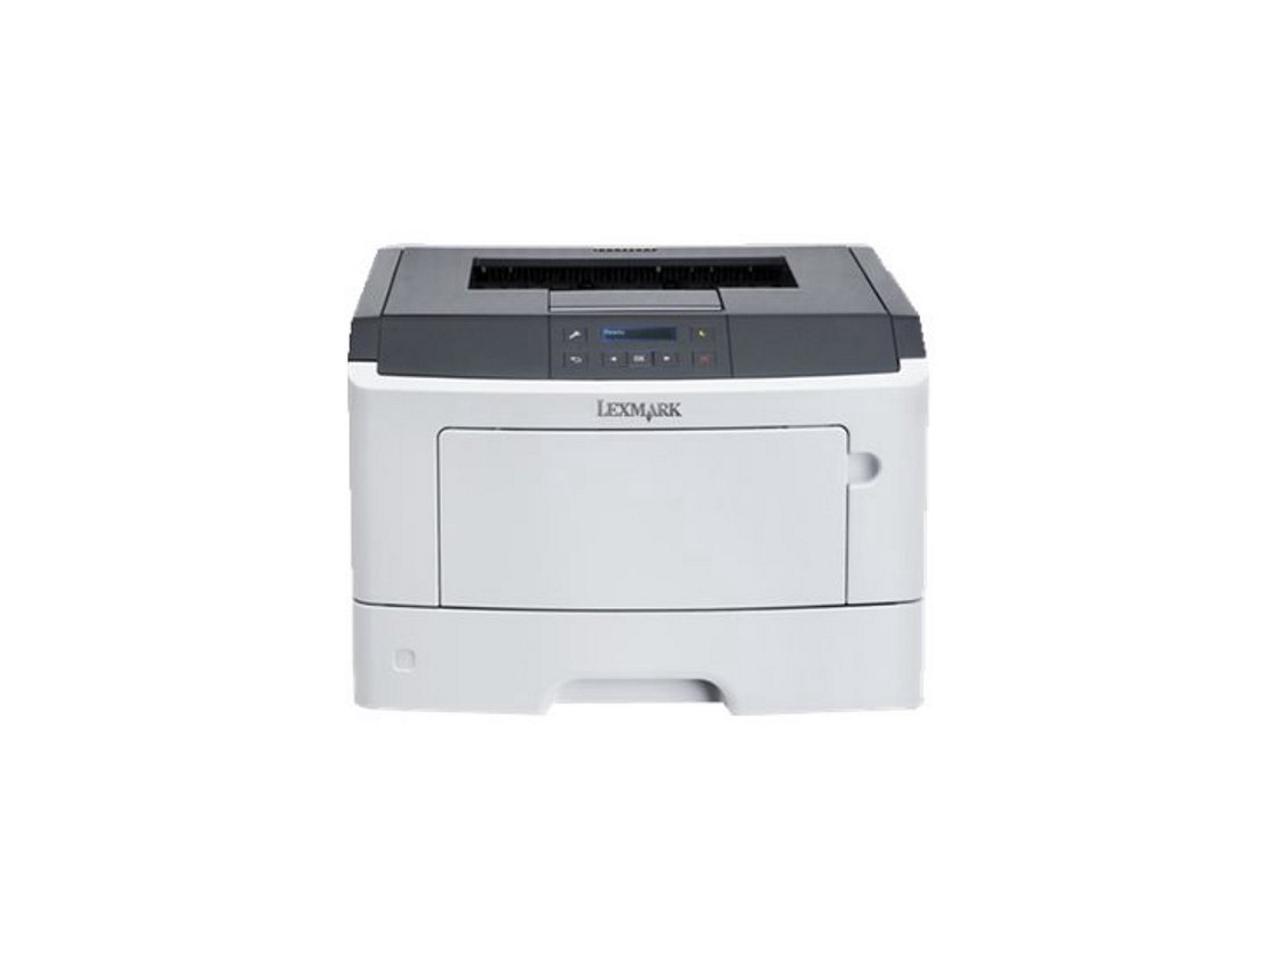 Lexmark MS321dn Laser Printer - EU Power - 36S0771 539.99